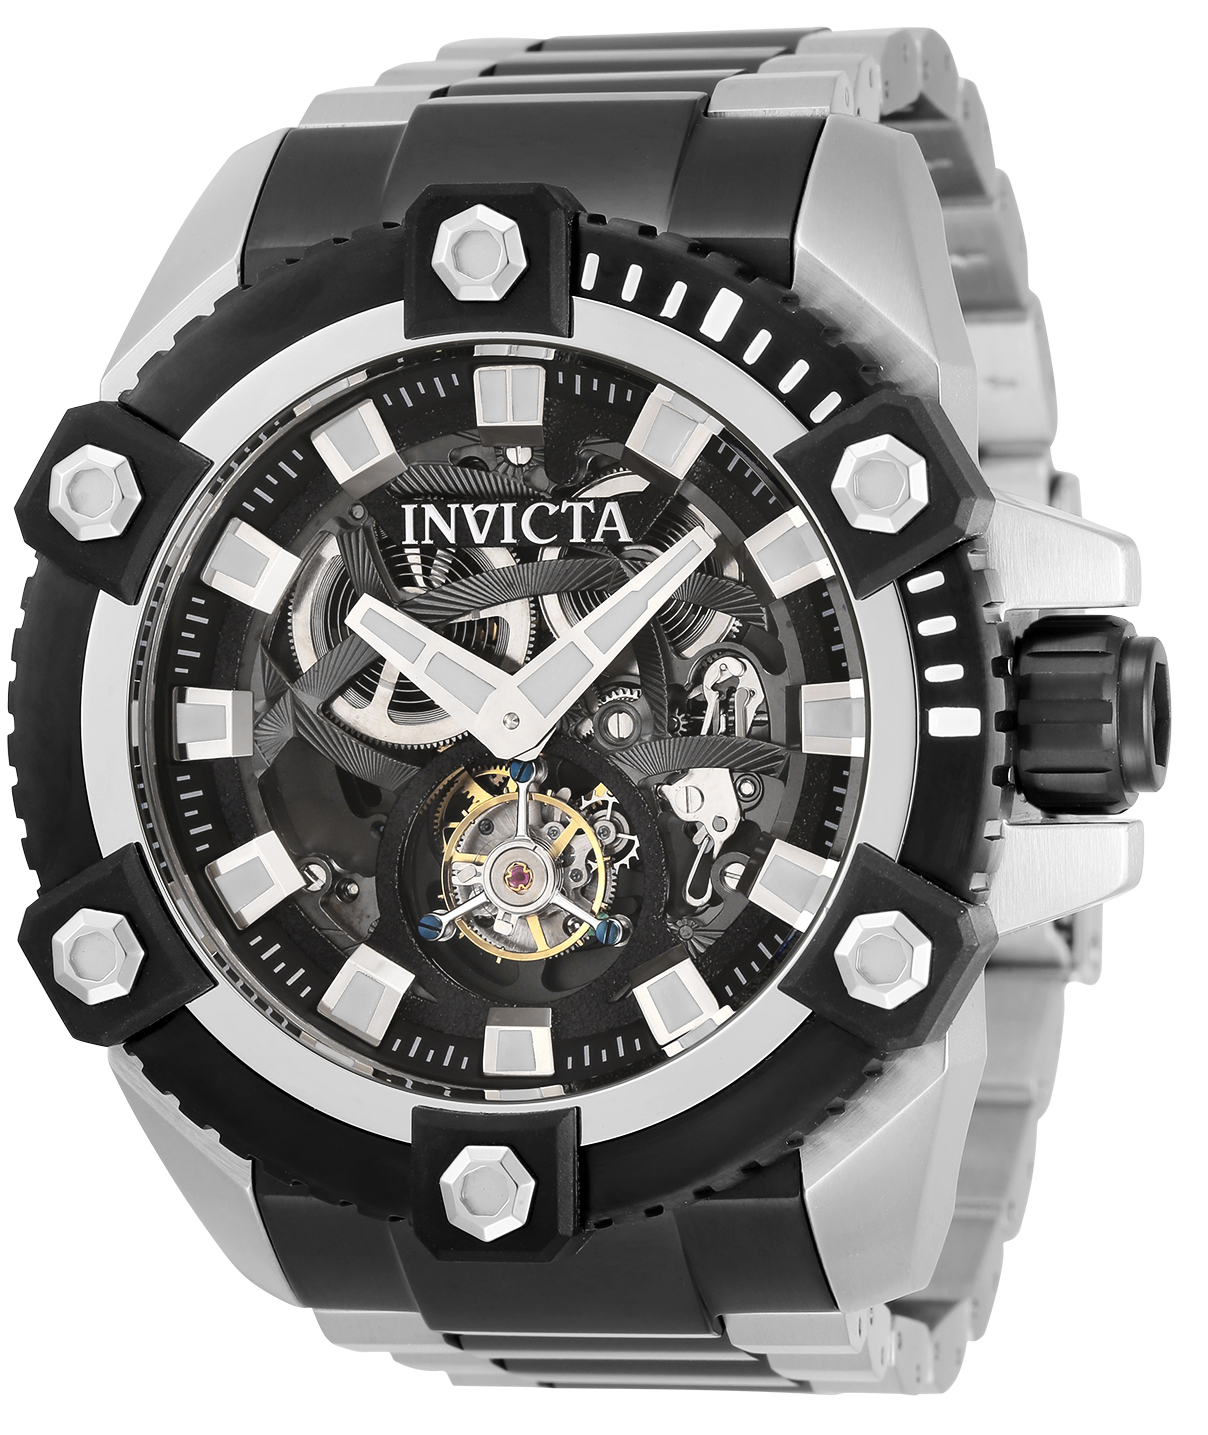 Invicta Reserve Automatic Tourbillon Men's Watch - 56mm, Steel, Black (33809)